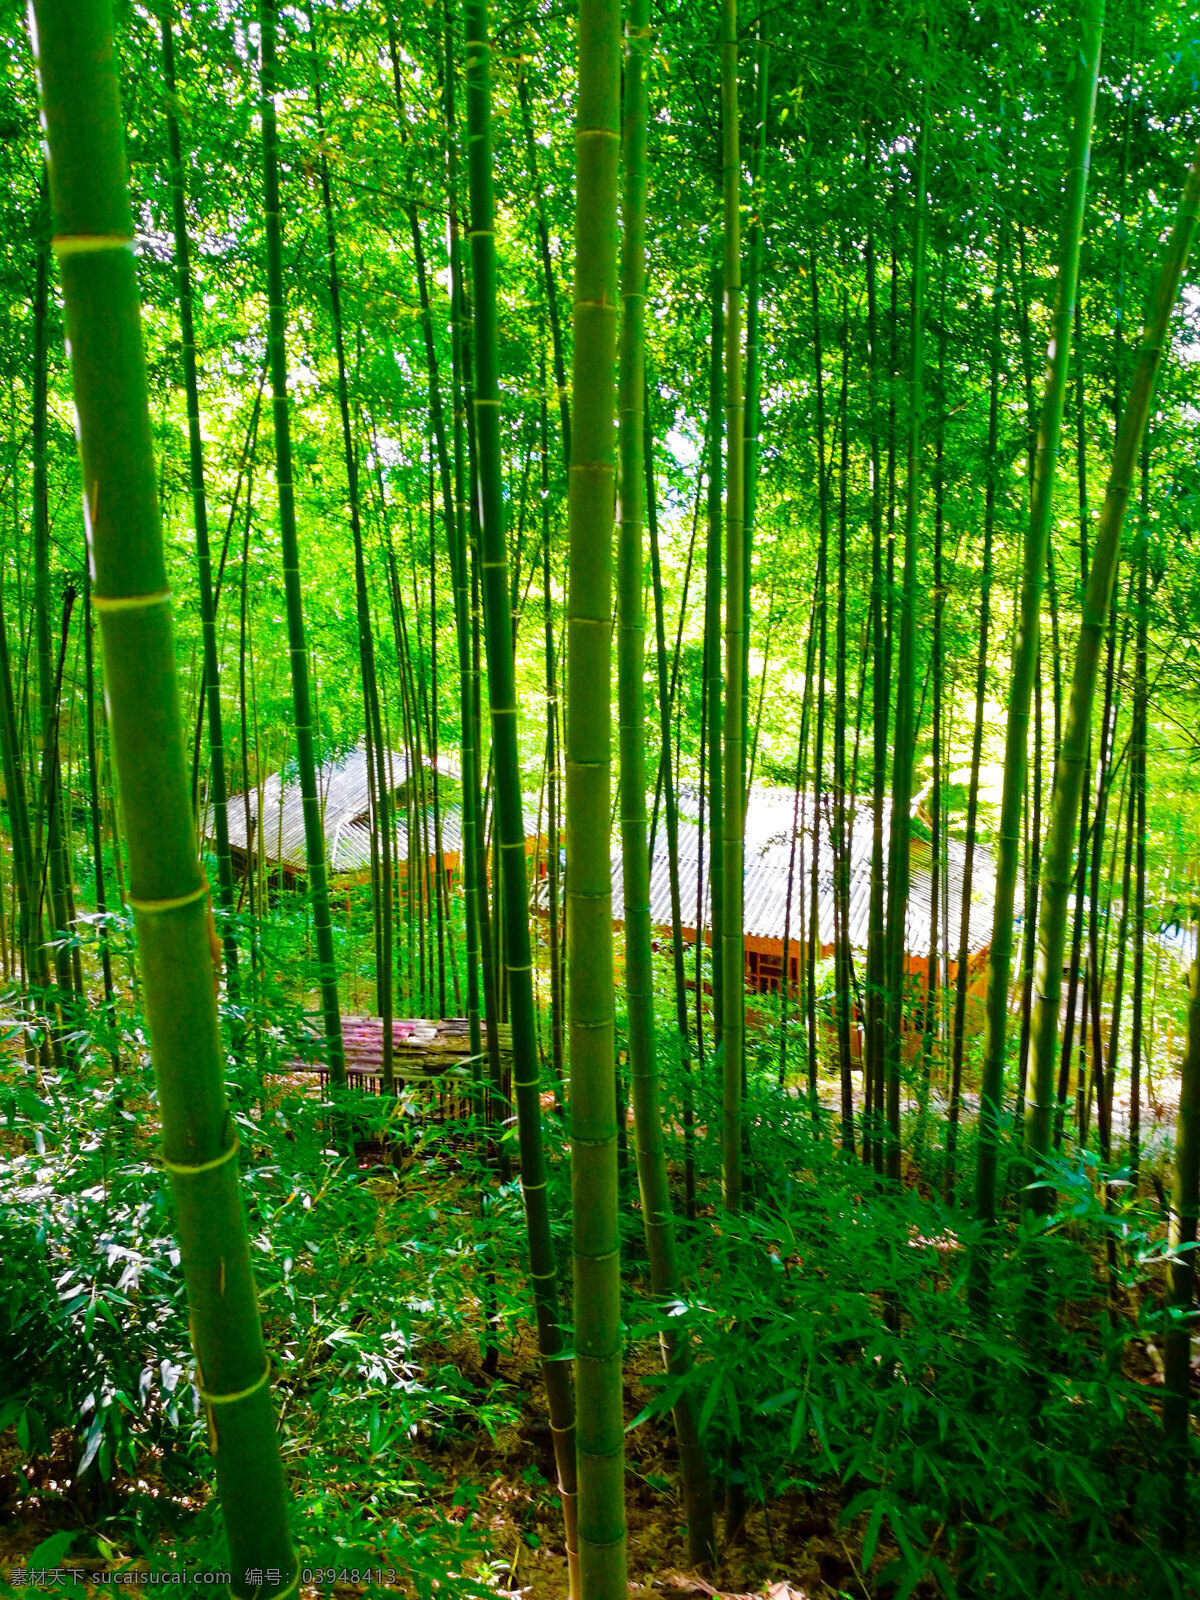 竹房子 竹照片 竹子 竹子照片 主杆 竹叶 竹林 竹林照片 植物 植物照片 竹子背景照片 树叶 生物世界 树木树叶